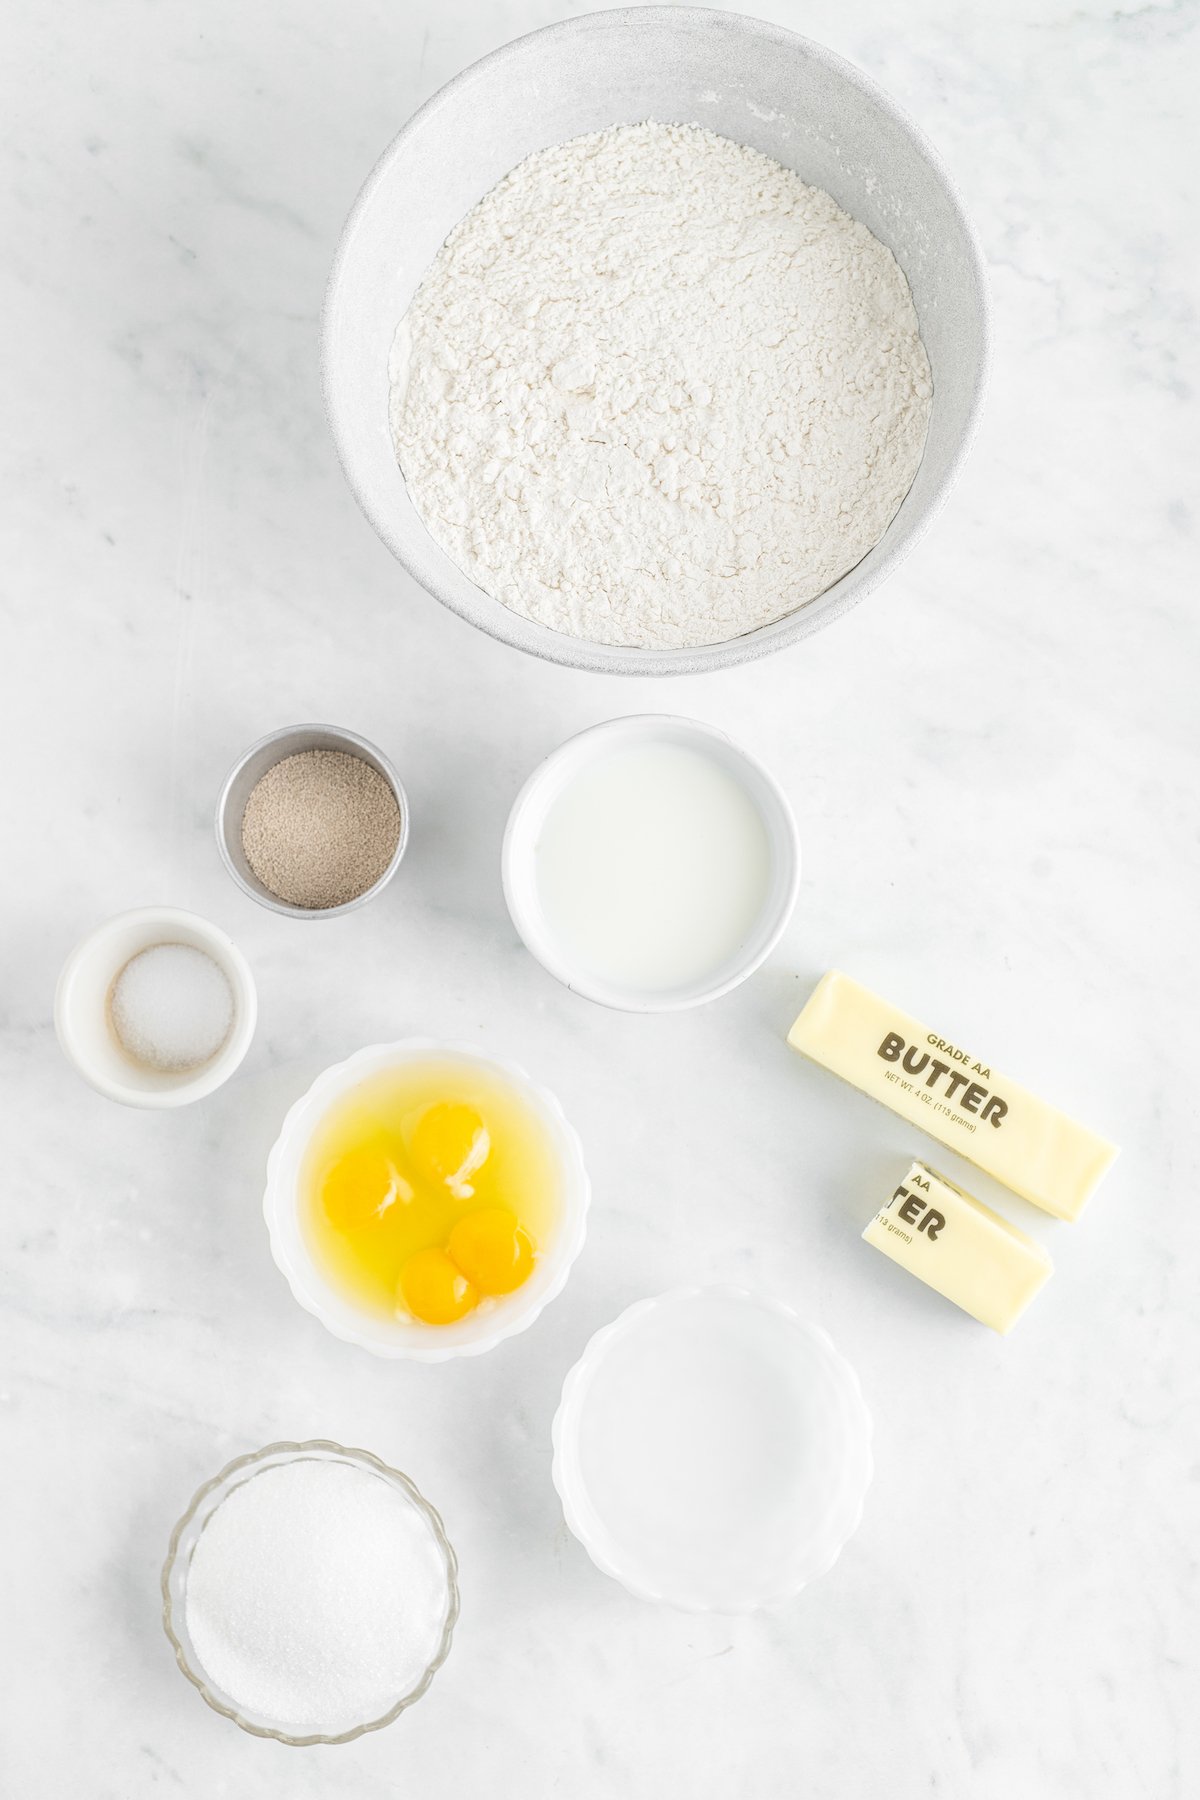 From top: Flour, milk, butter, water, sugar, eggs, yeast, salt.